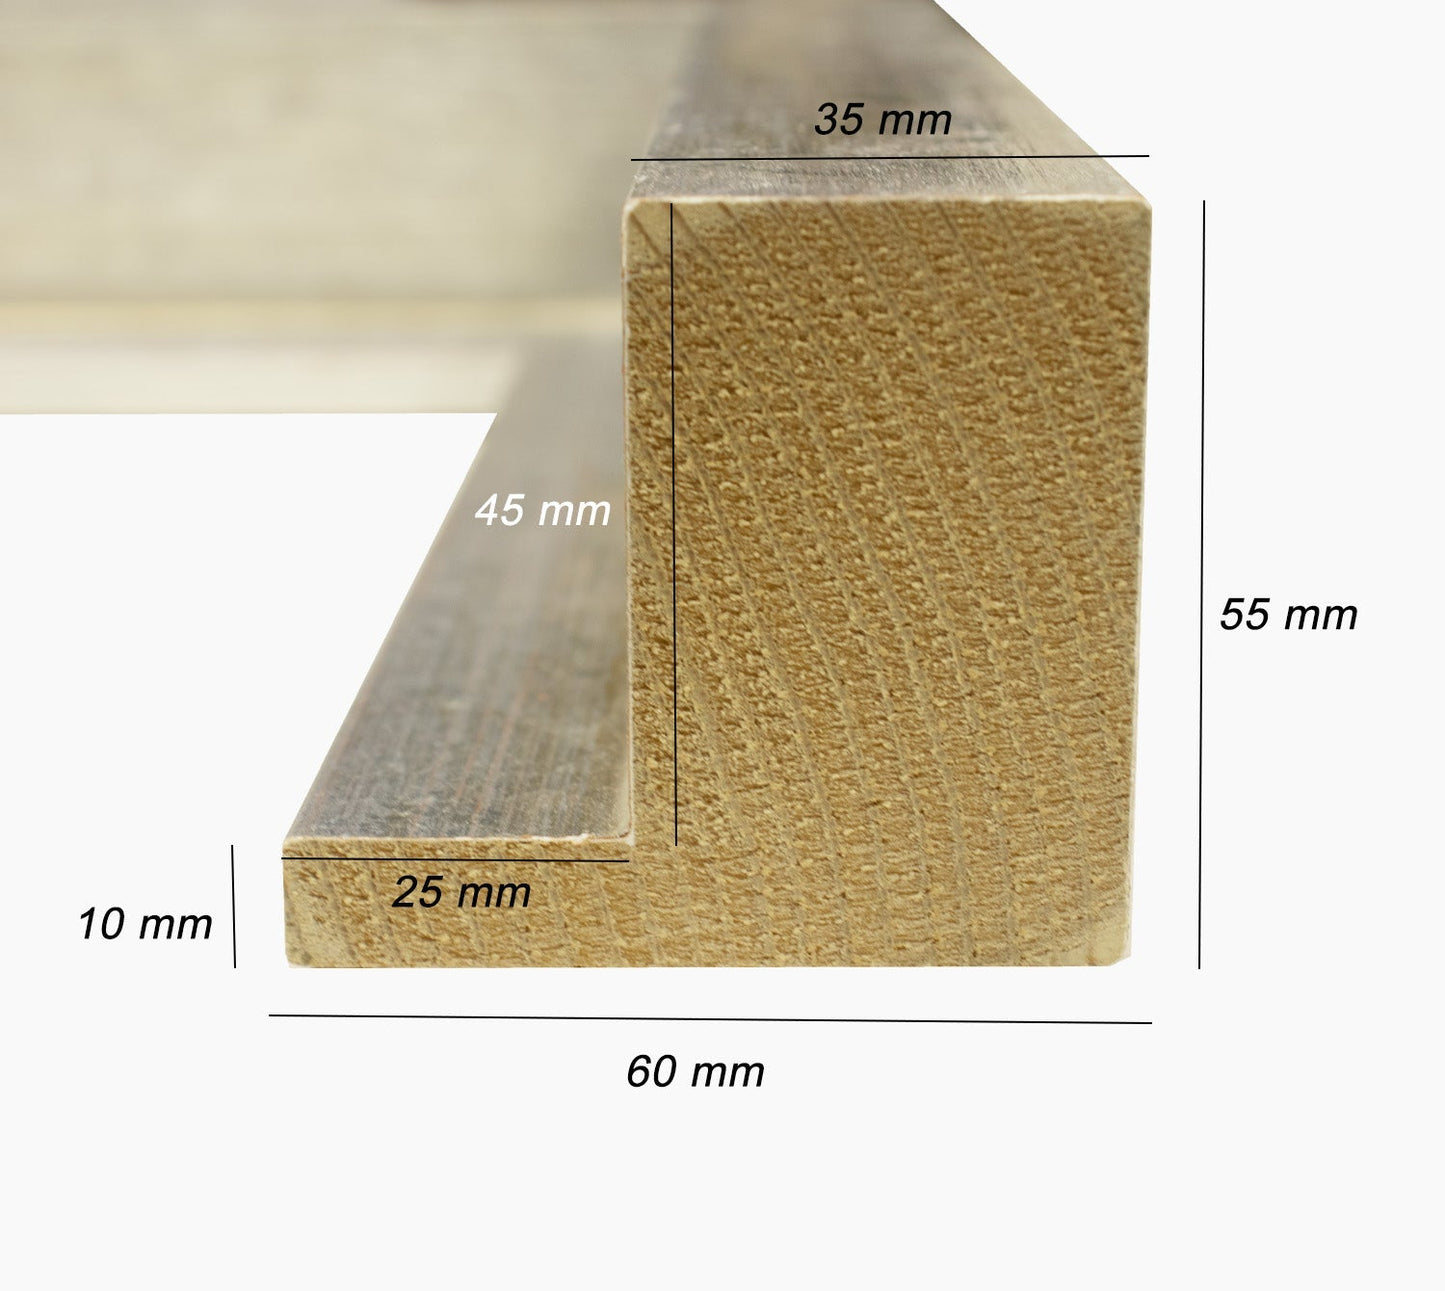 605.301 cadre en bois a la feuille d'argent mesure de profil 60x55 mm Lombarda cornici S.n.c.